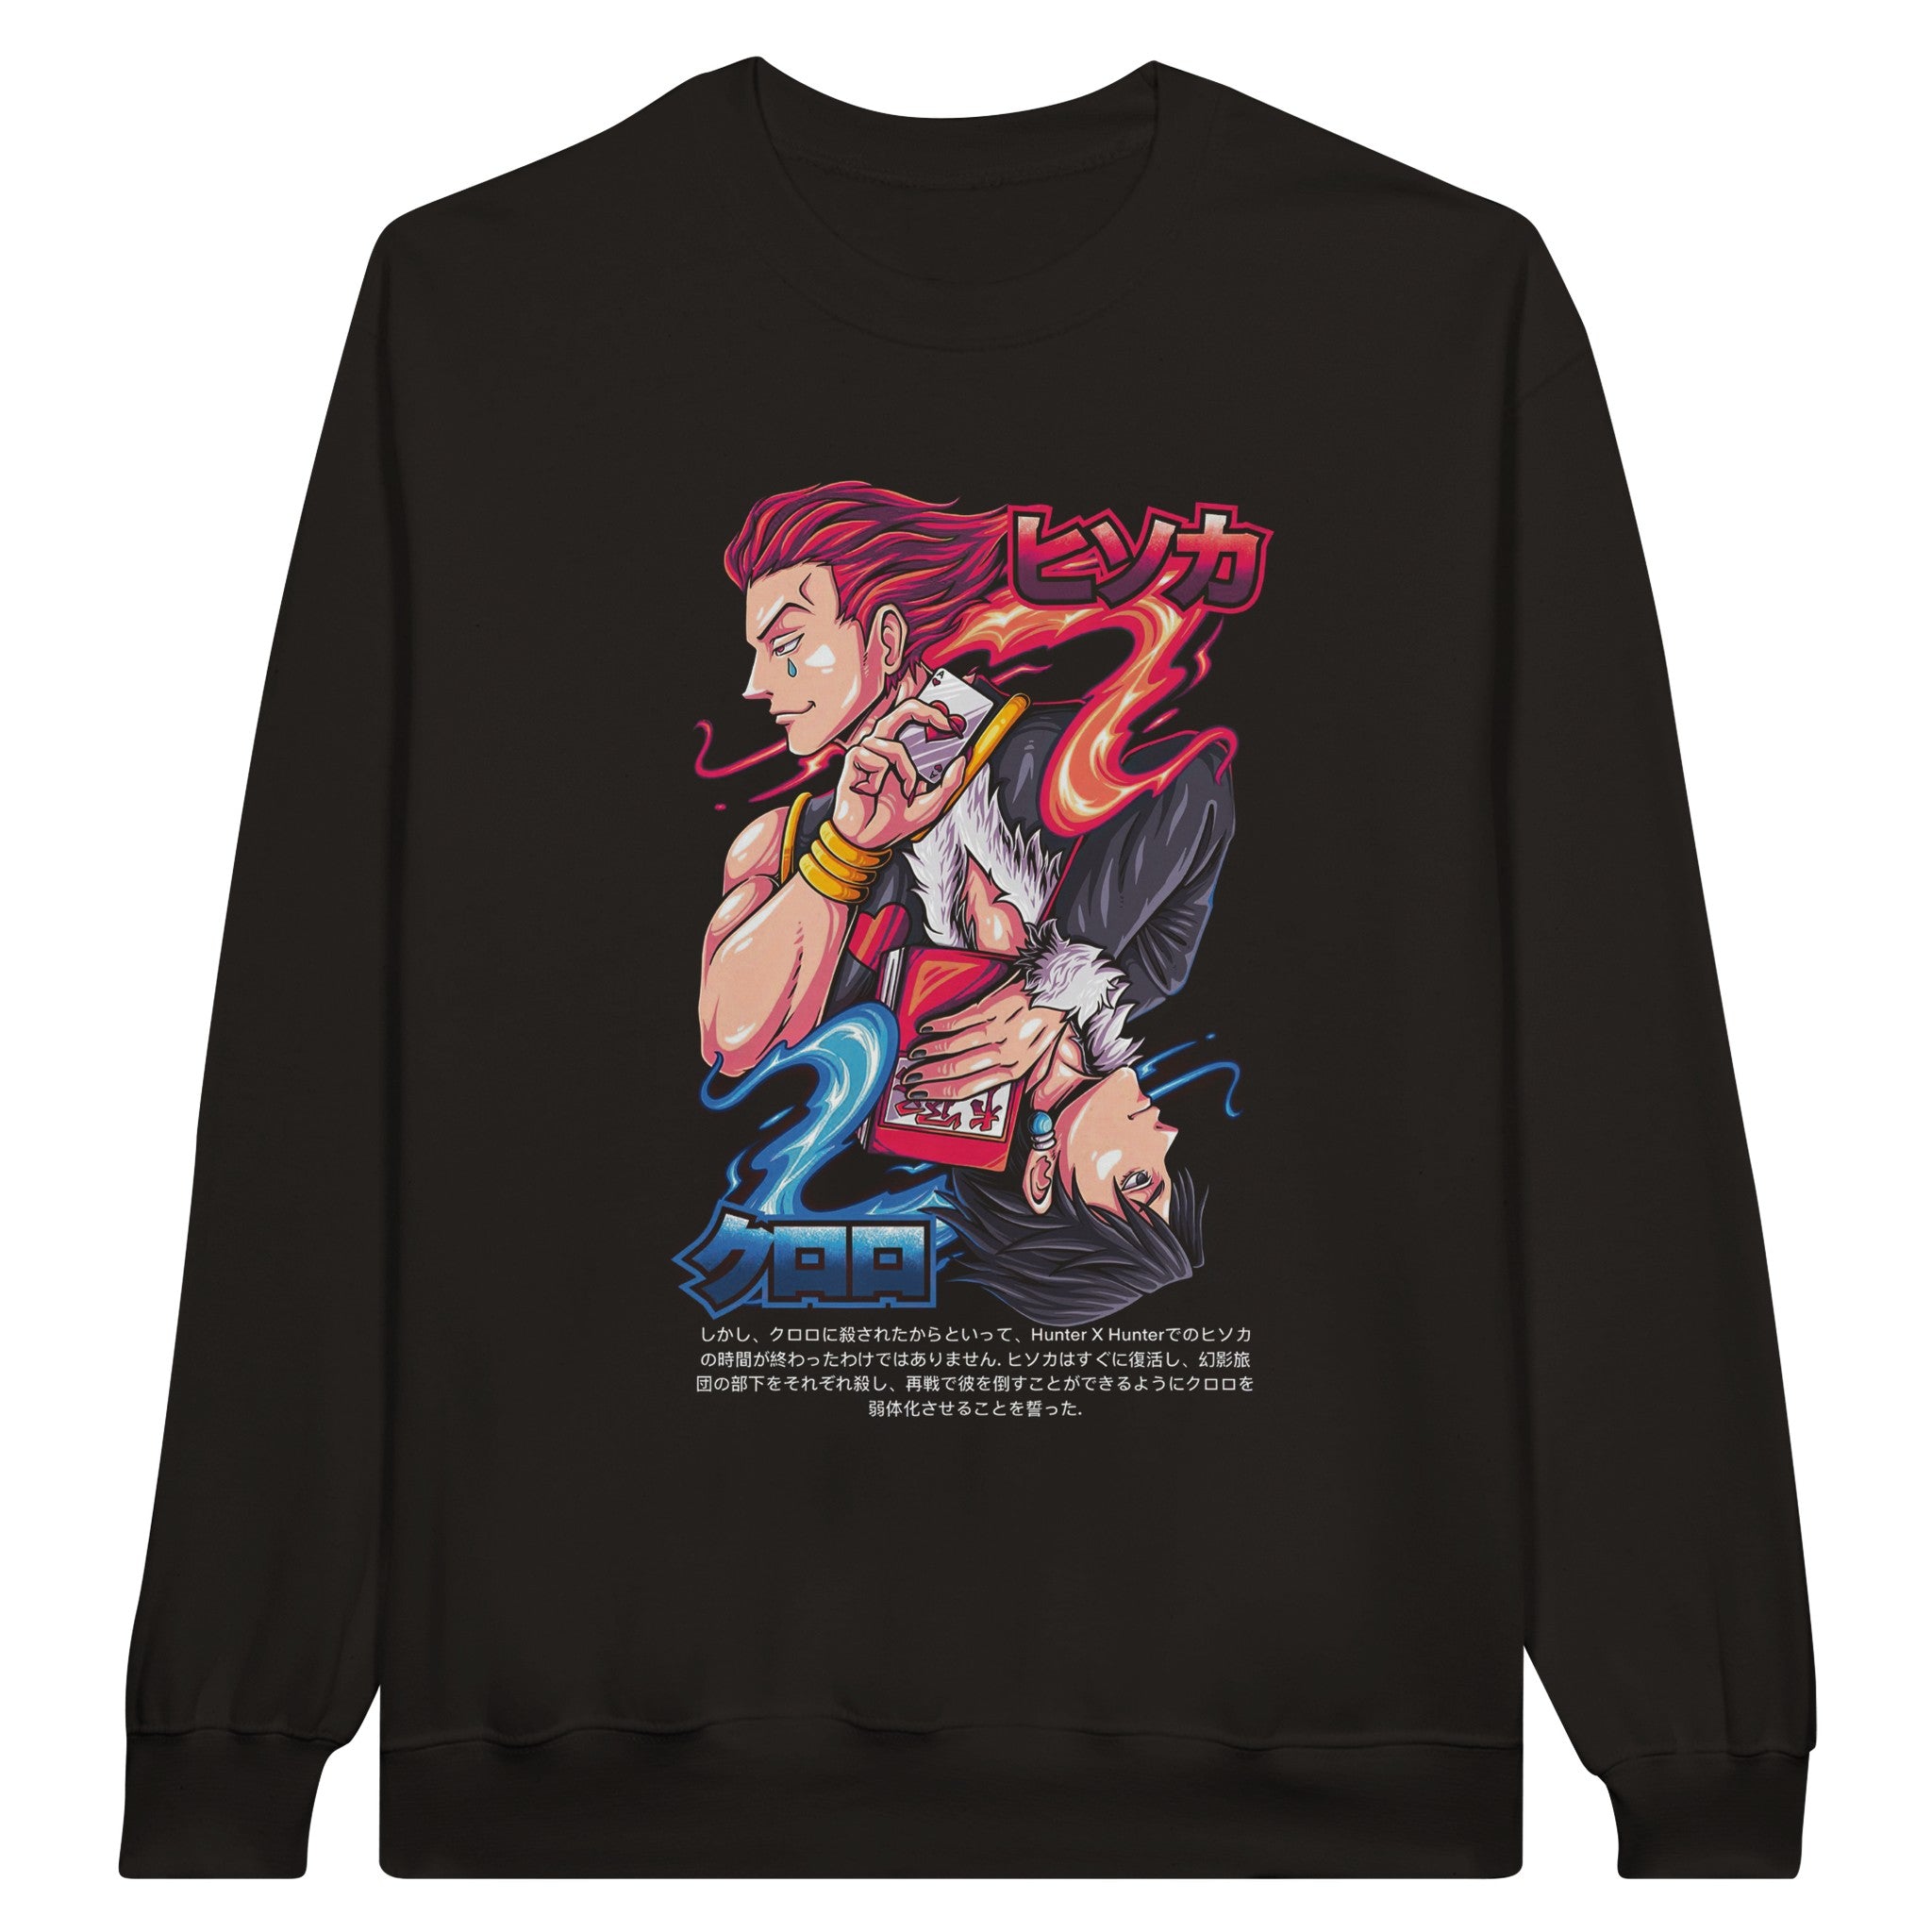 shop and buy hisoka hunter x hunter anime clothing sweatshirt